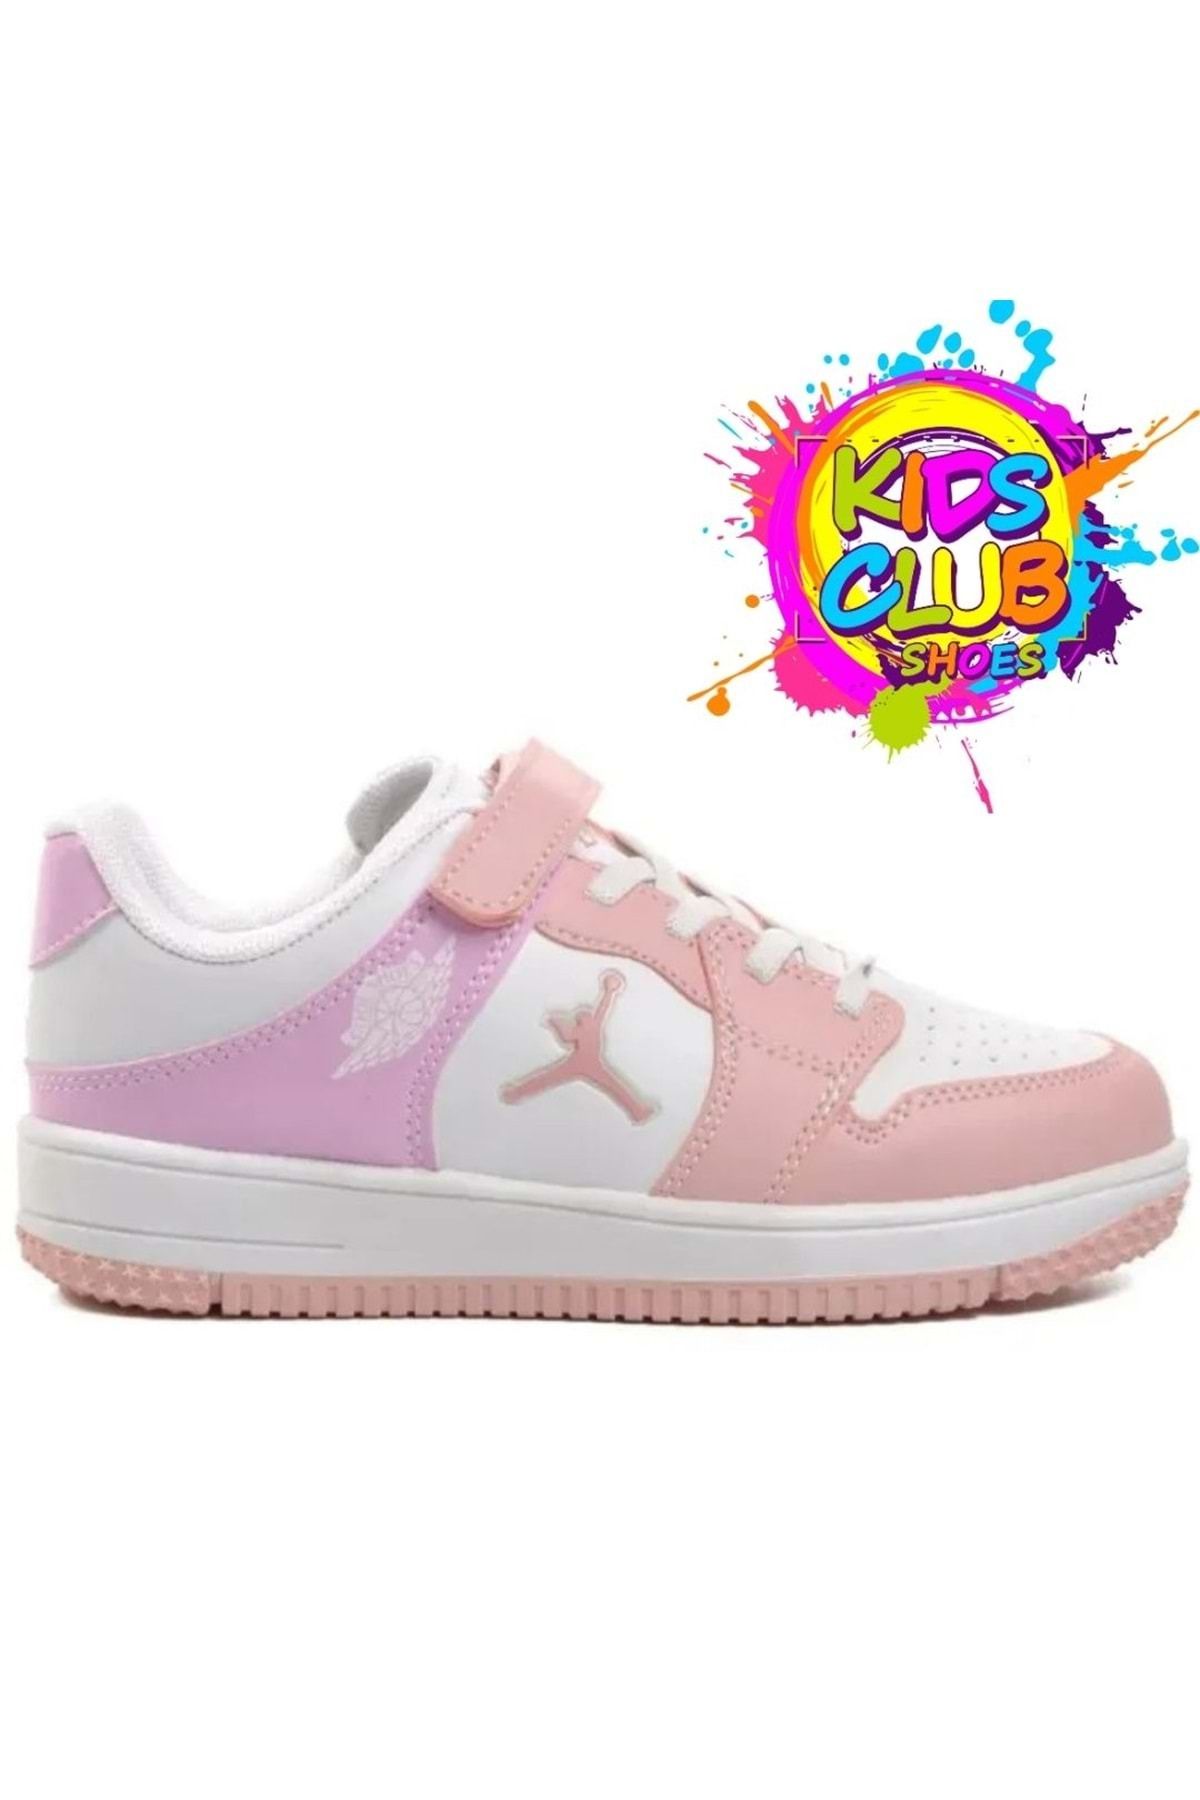 Kids Club Shoes Cool Glaxy Pekin Force sneaker Çocuk Spor Ayakkabı PEMBE